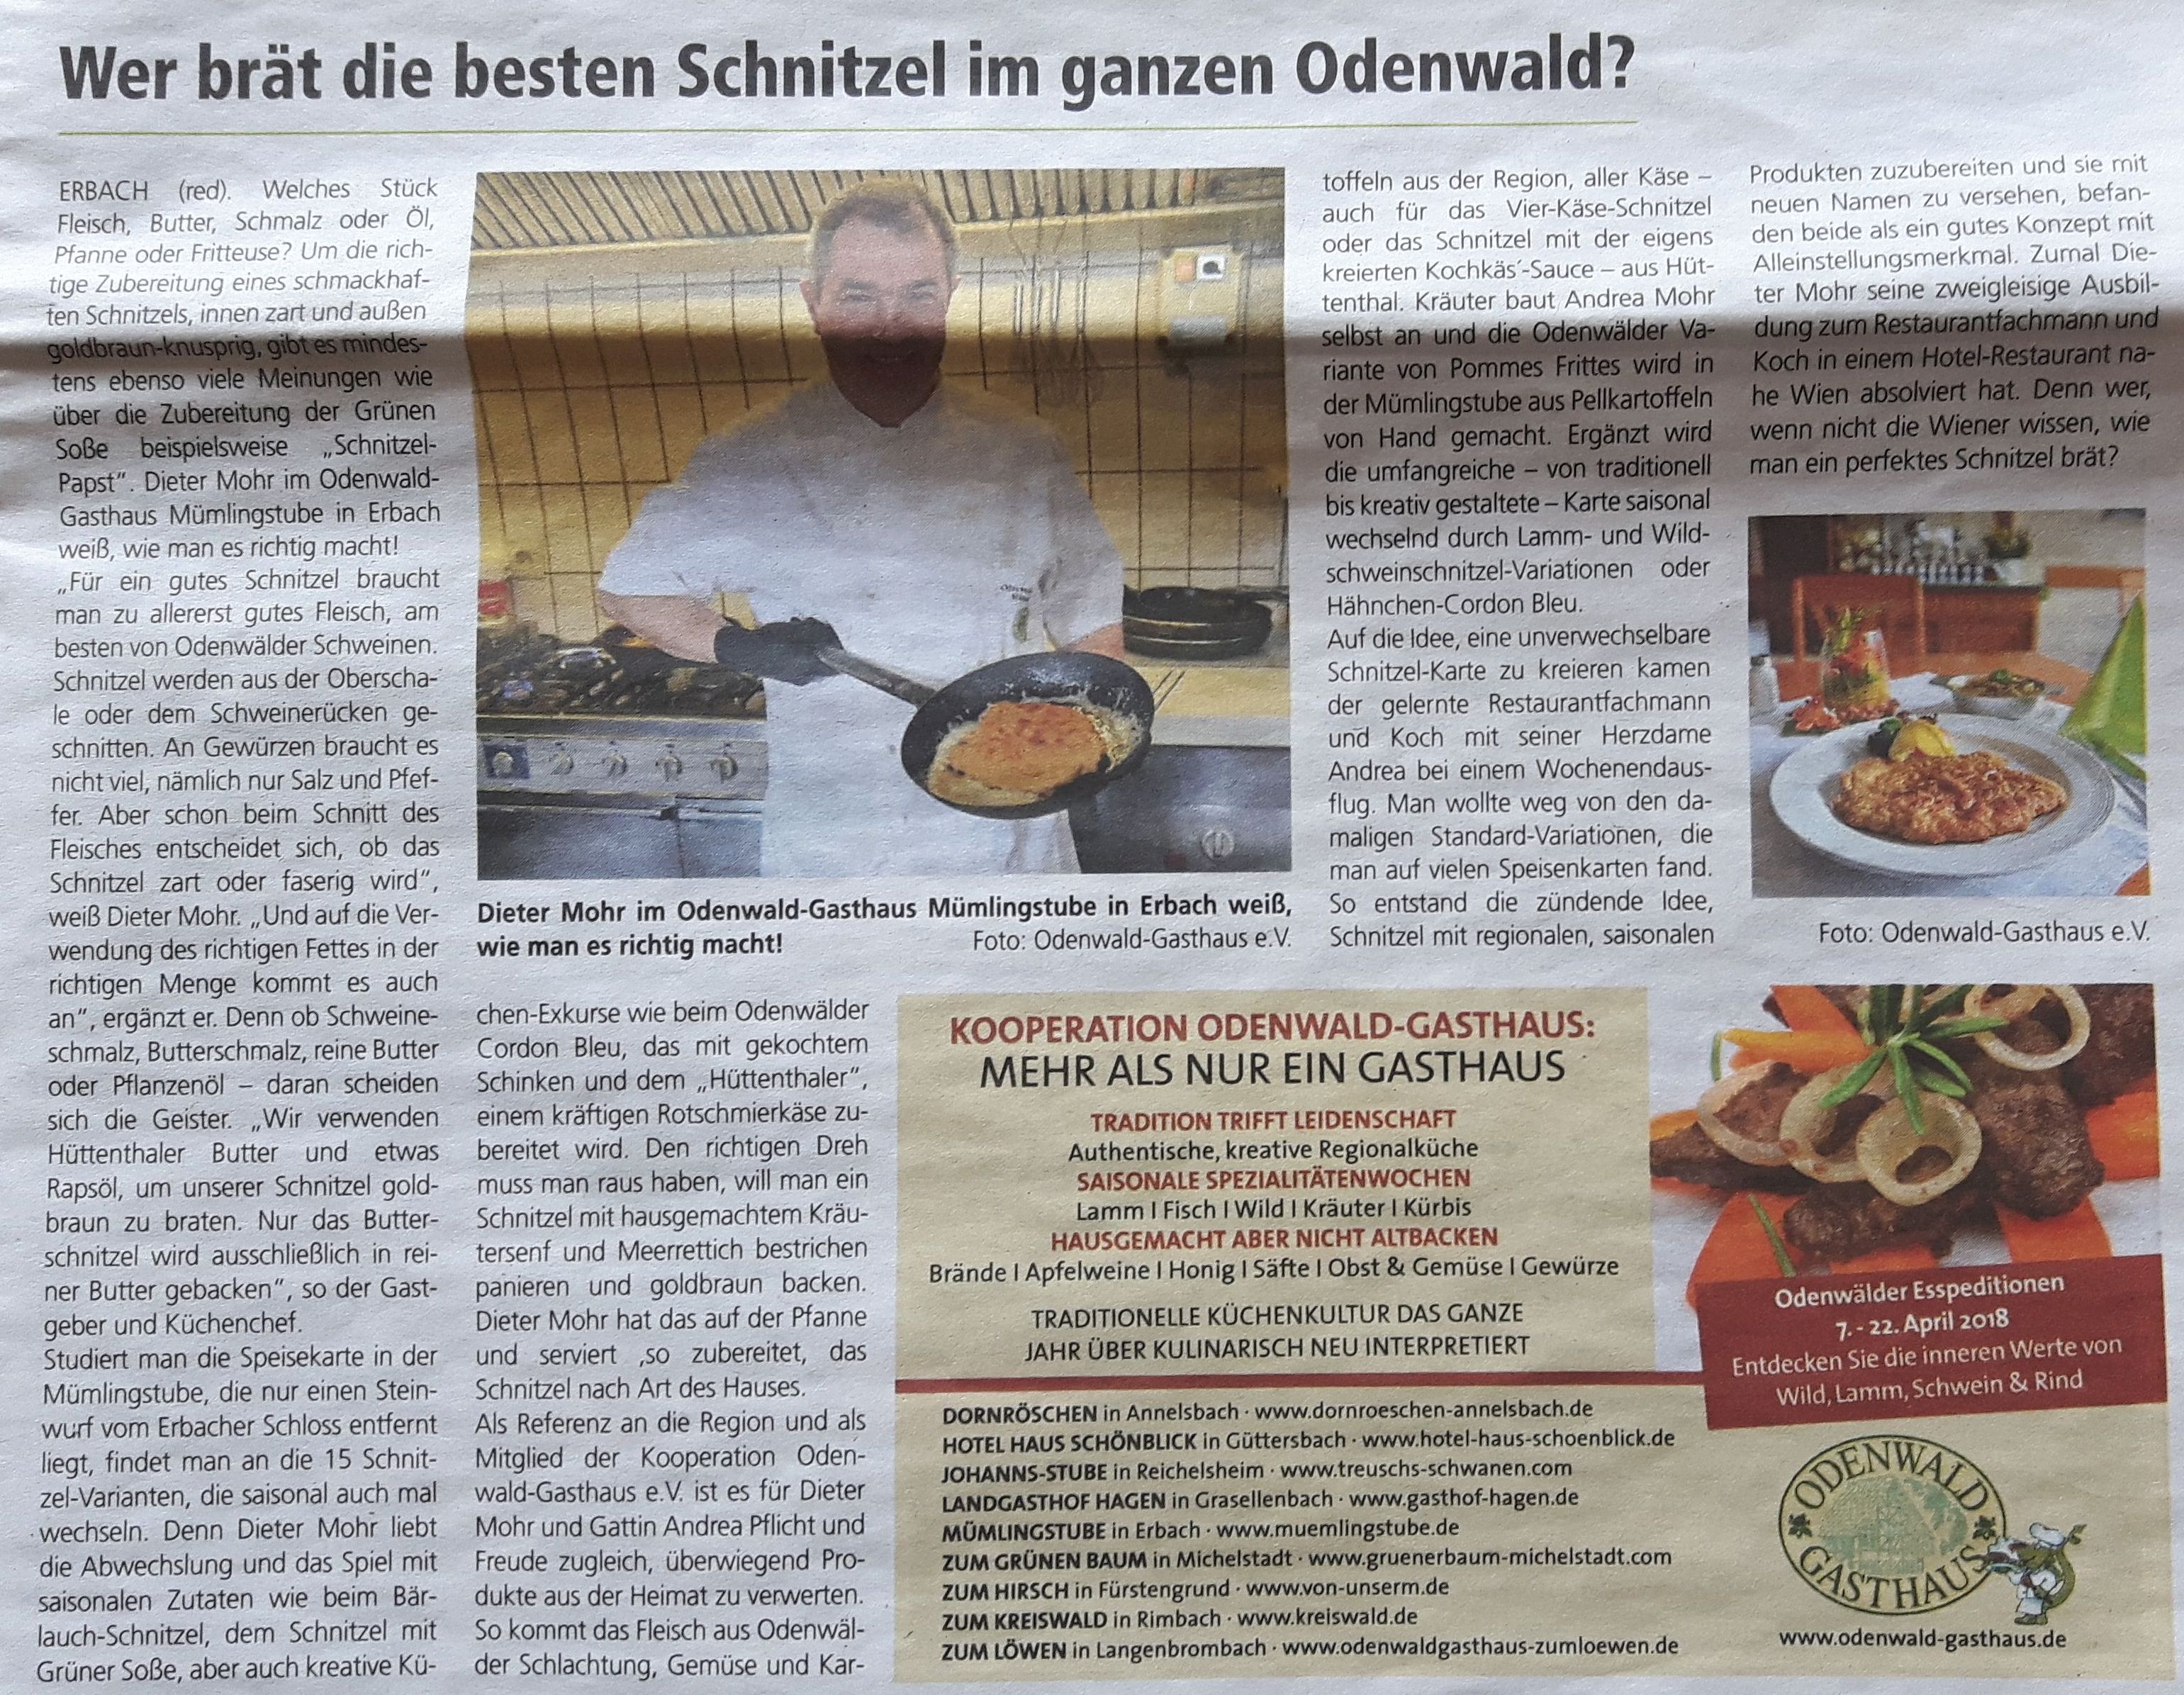 Dieter Mohr brät die besten Schnitzel im Odenwald